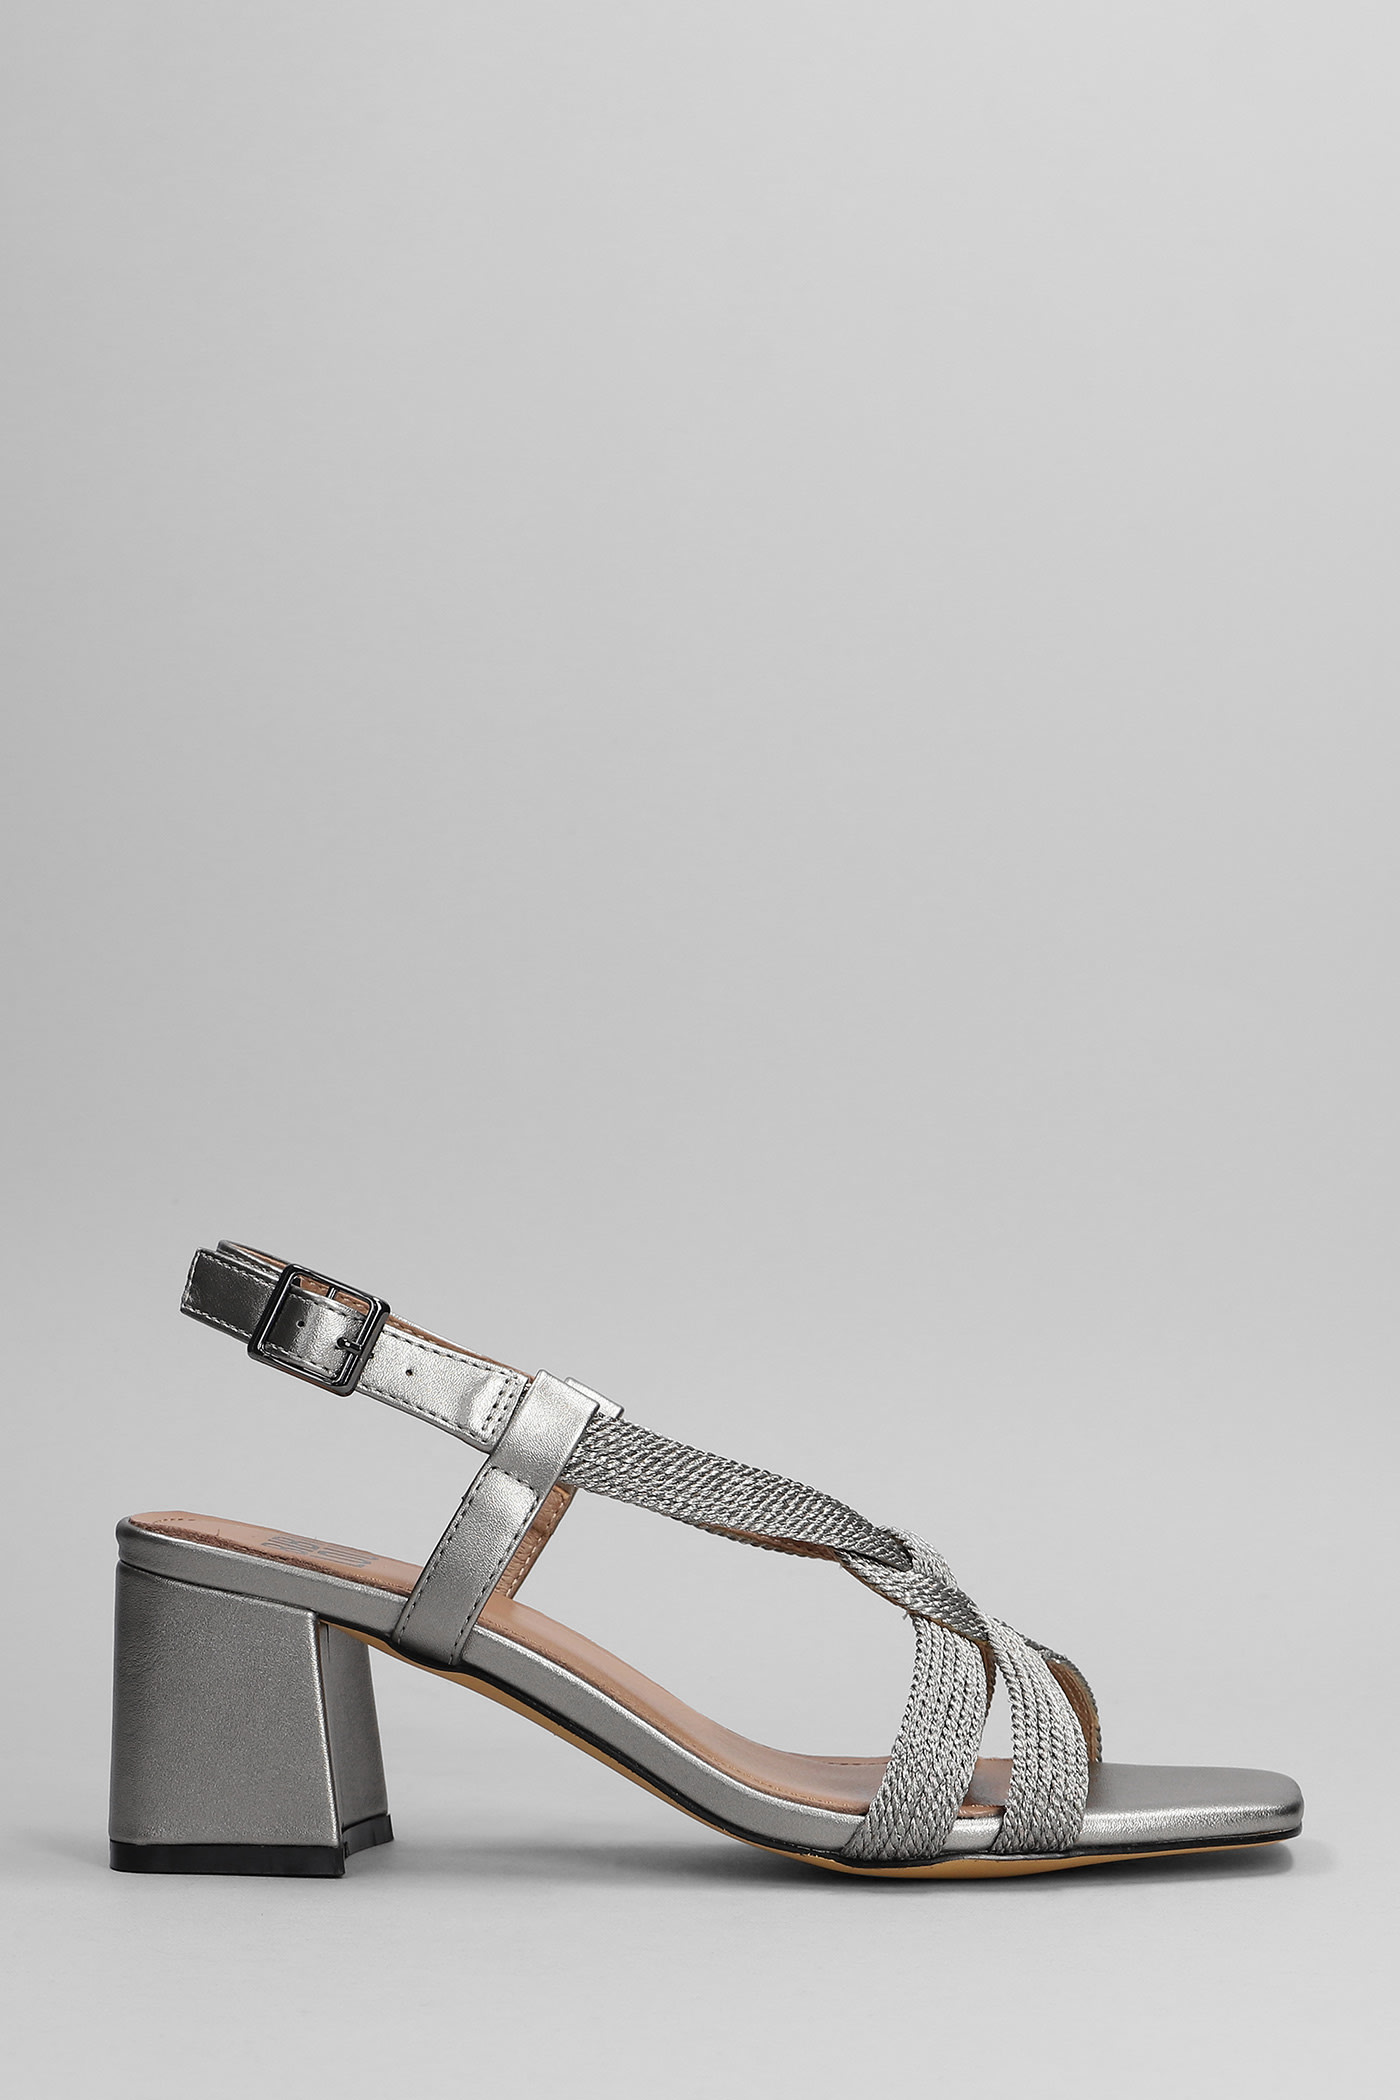 Bibi Lou Sandals In Gunmetal Leather